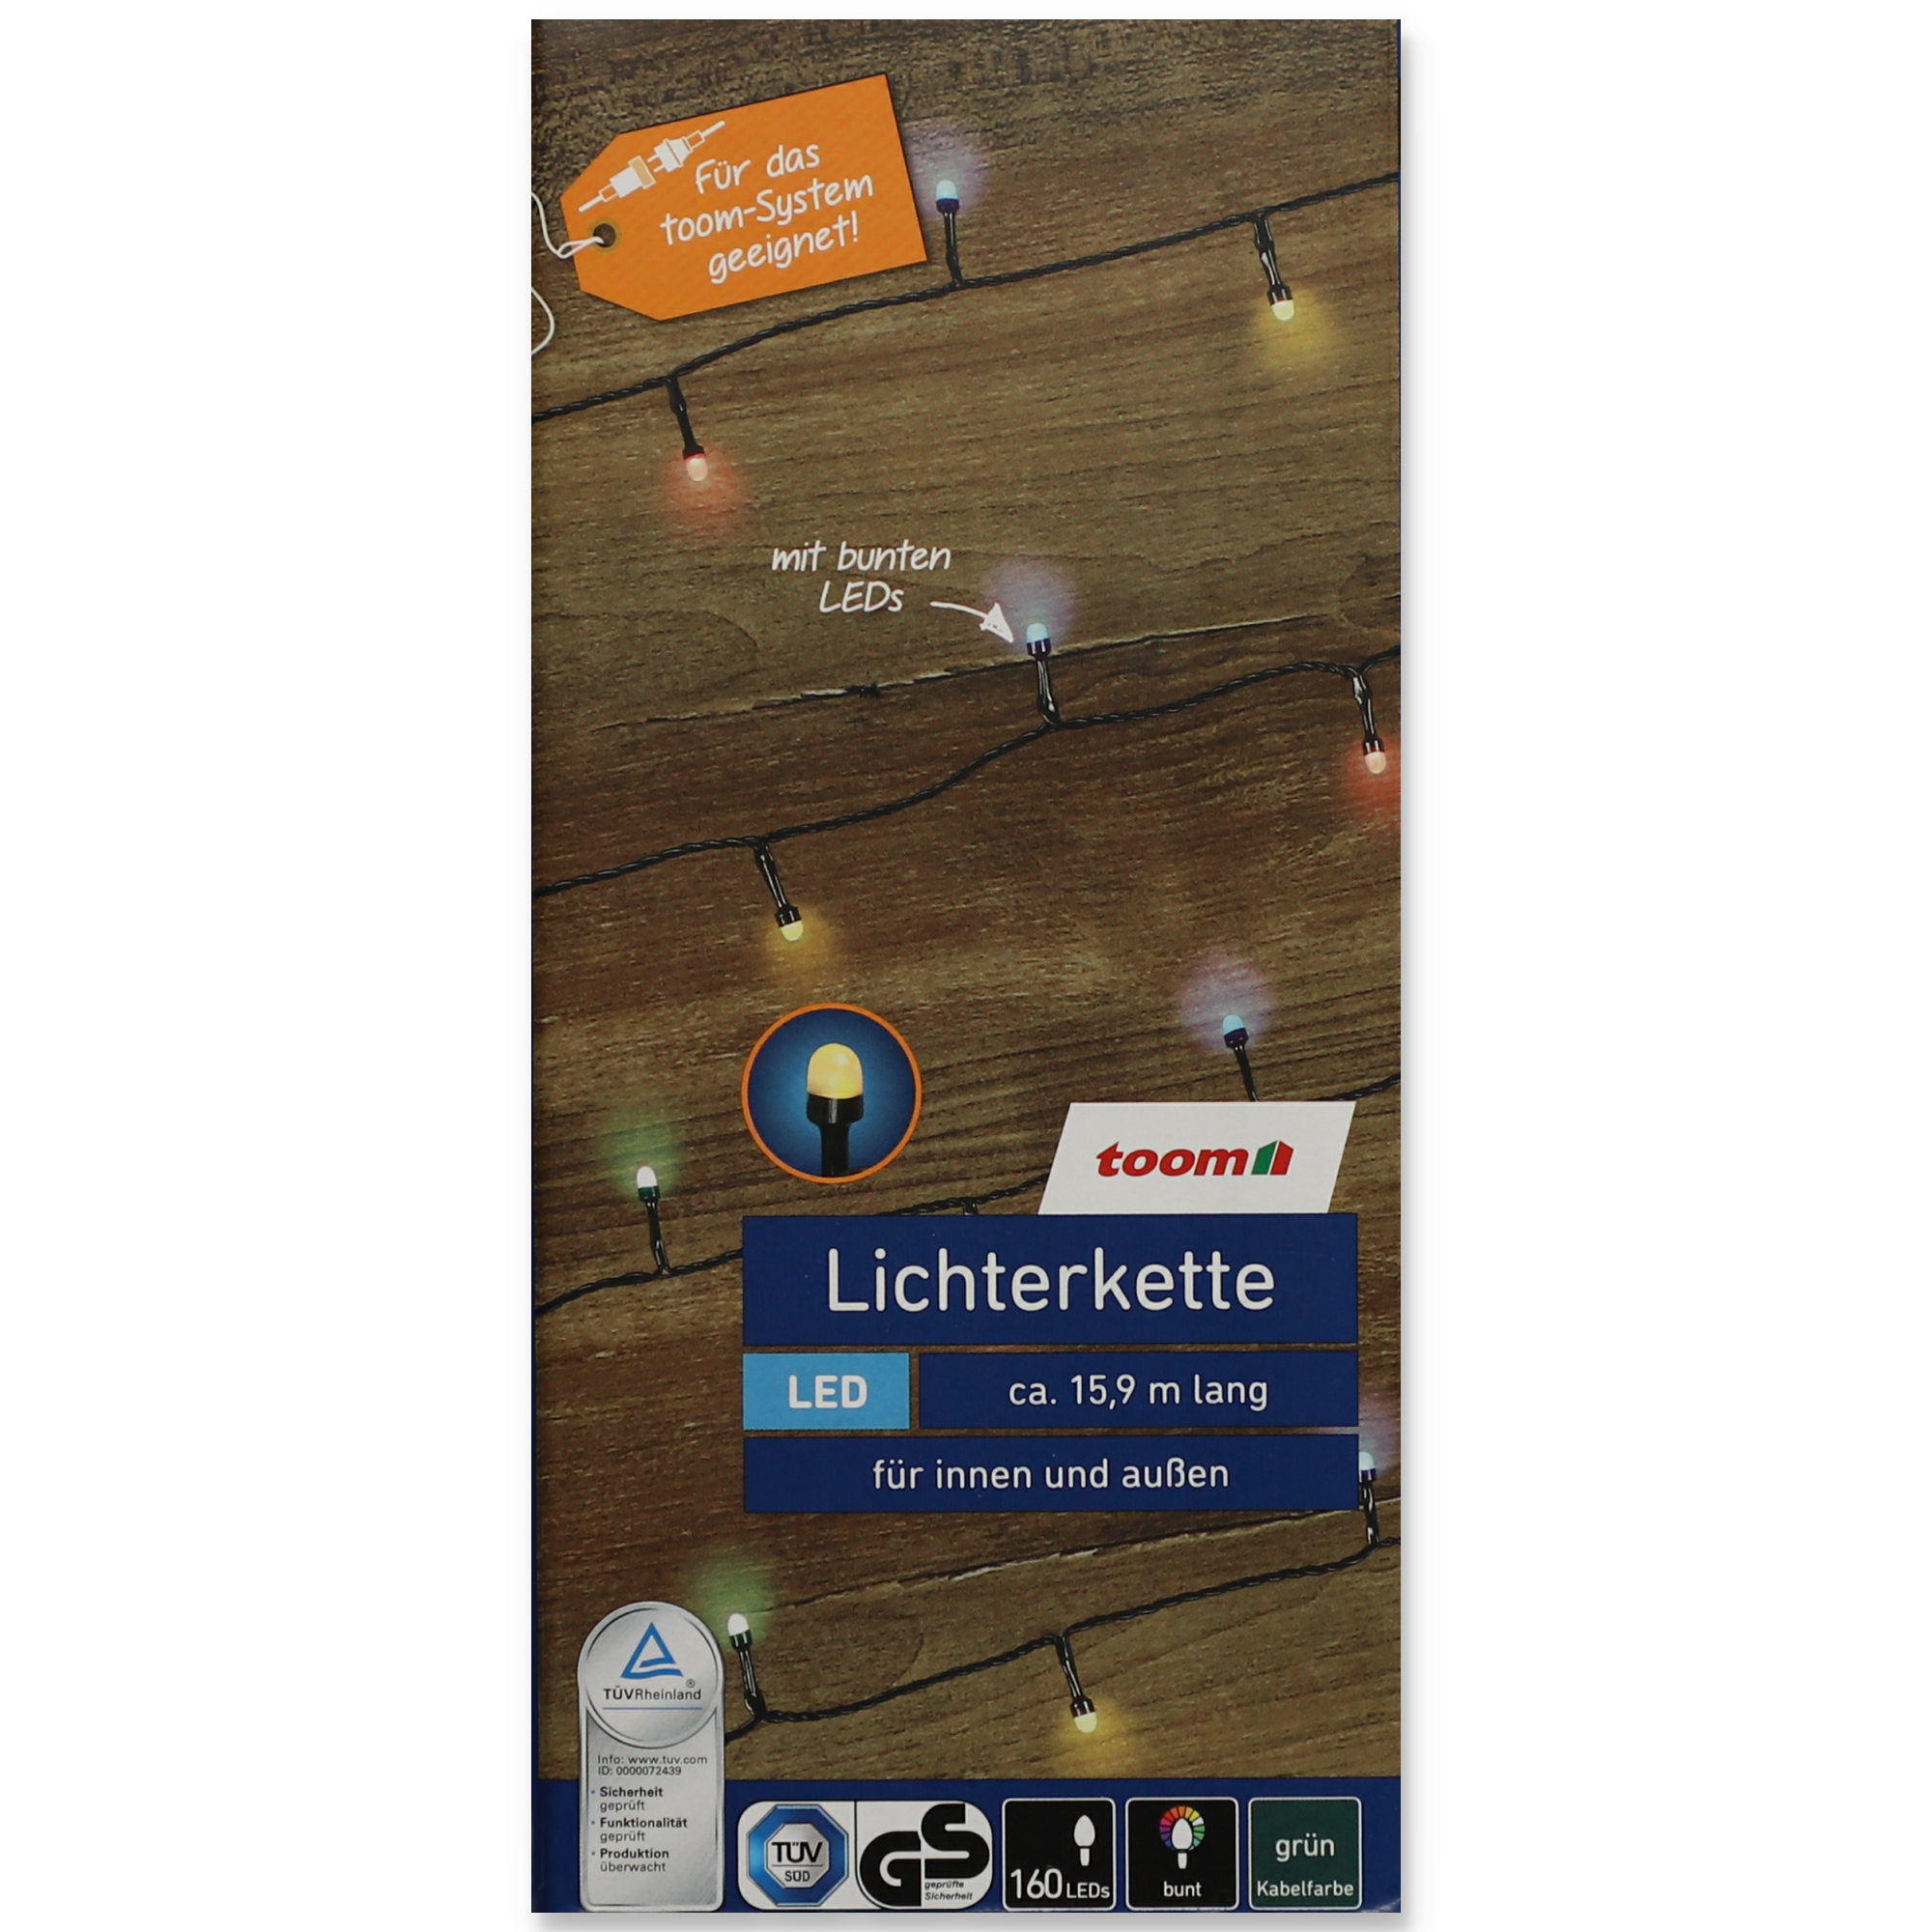 LED-Lichterkette 160 bunte LEDs, 15,9 m + product picture